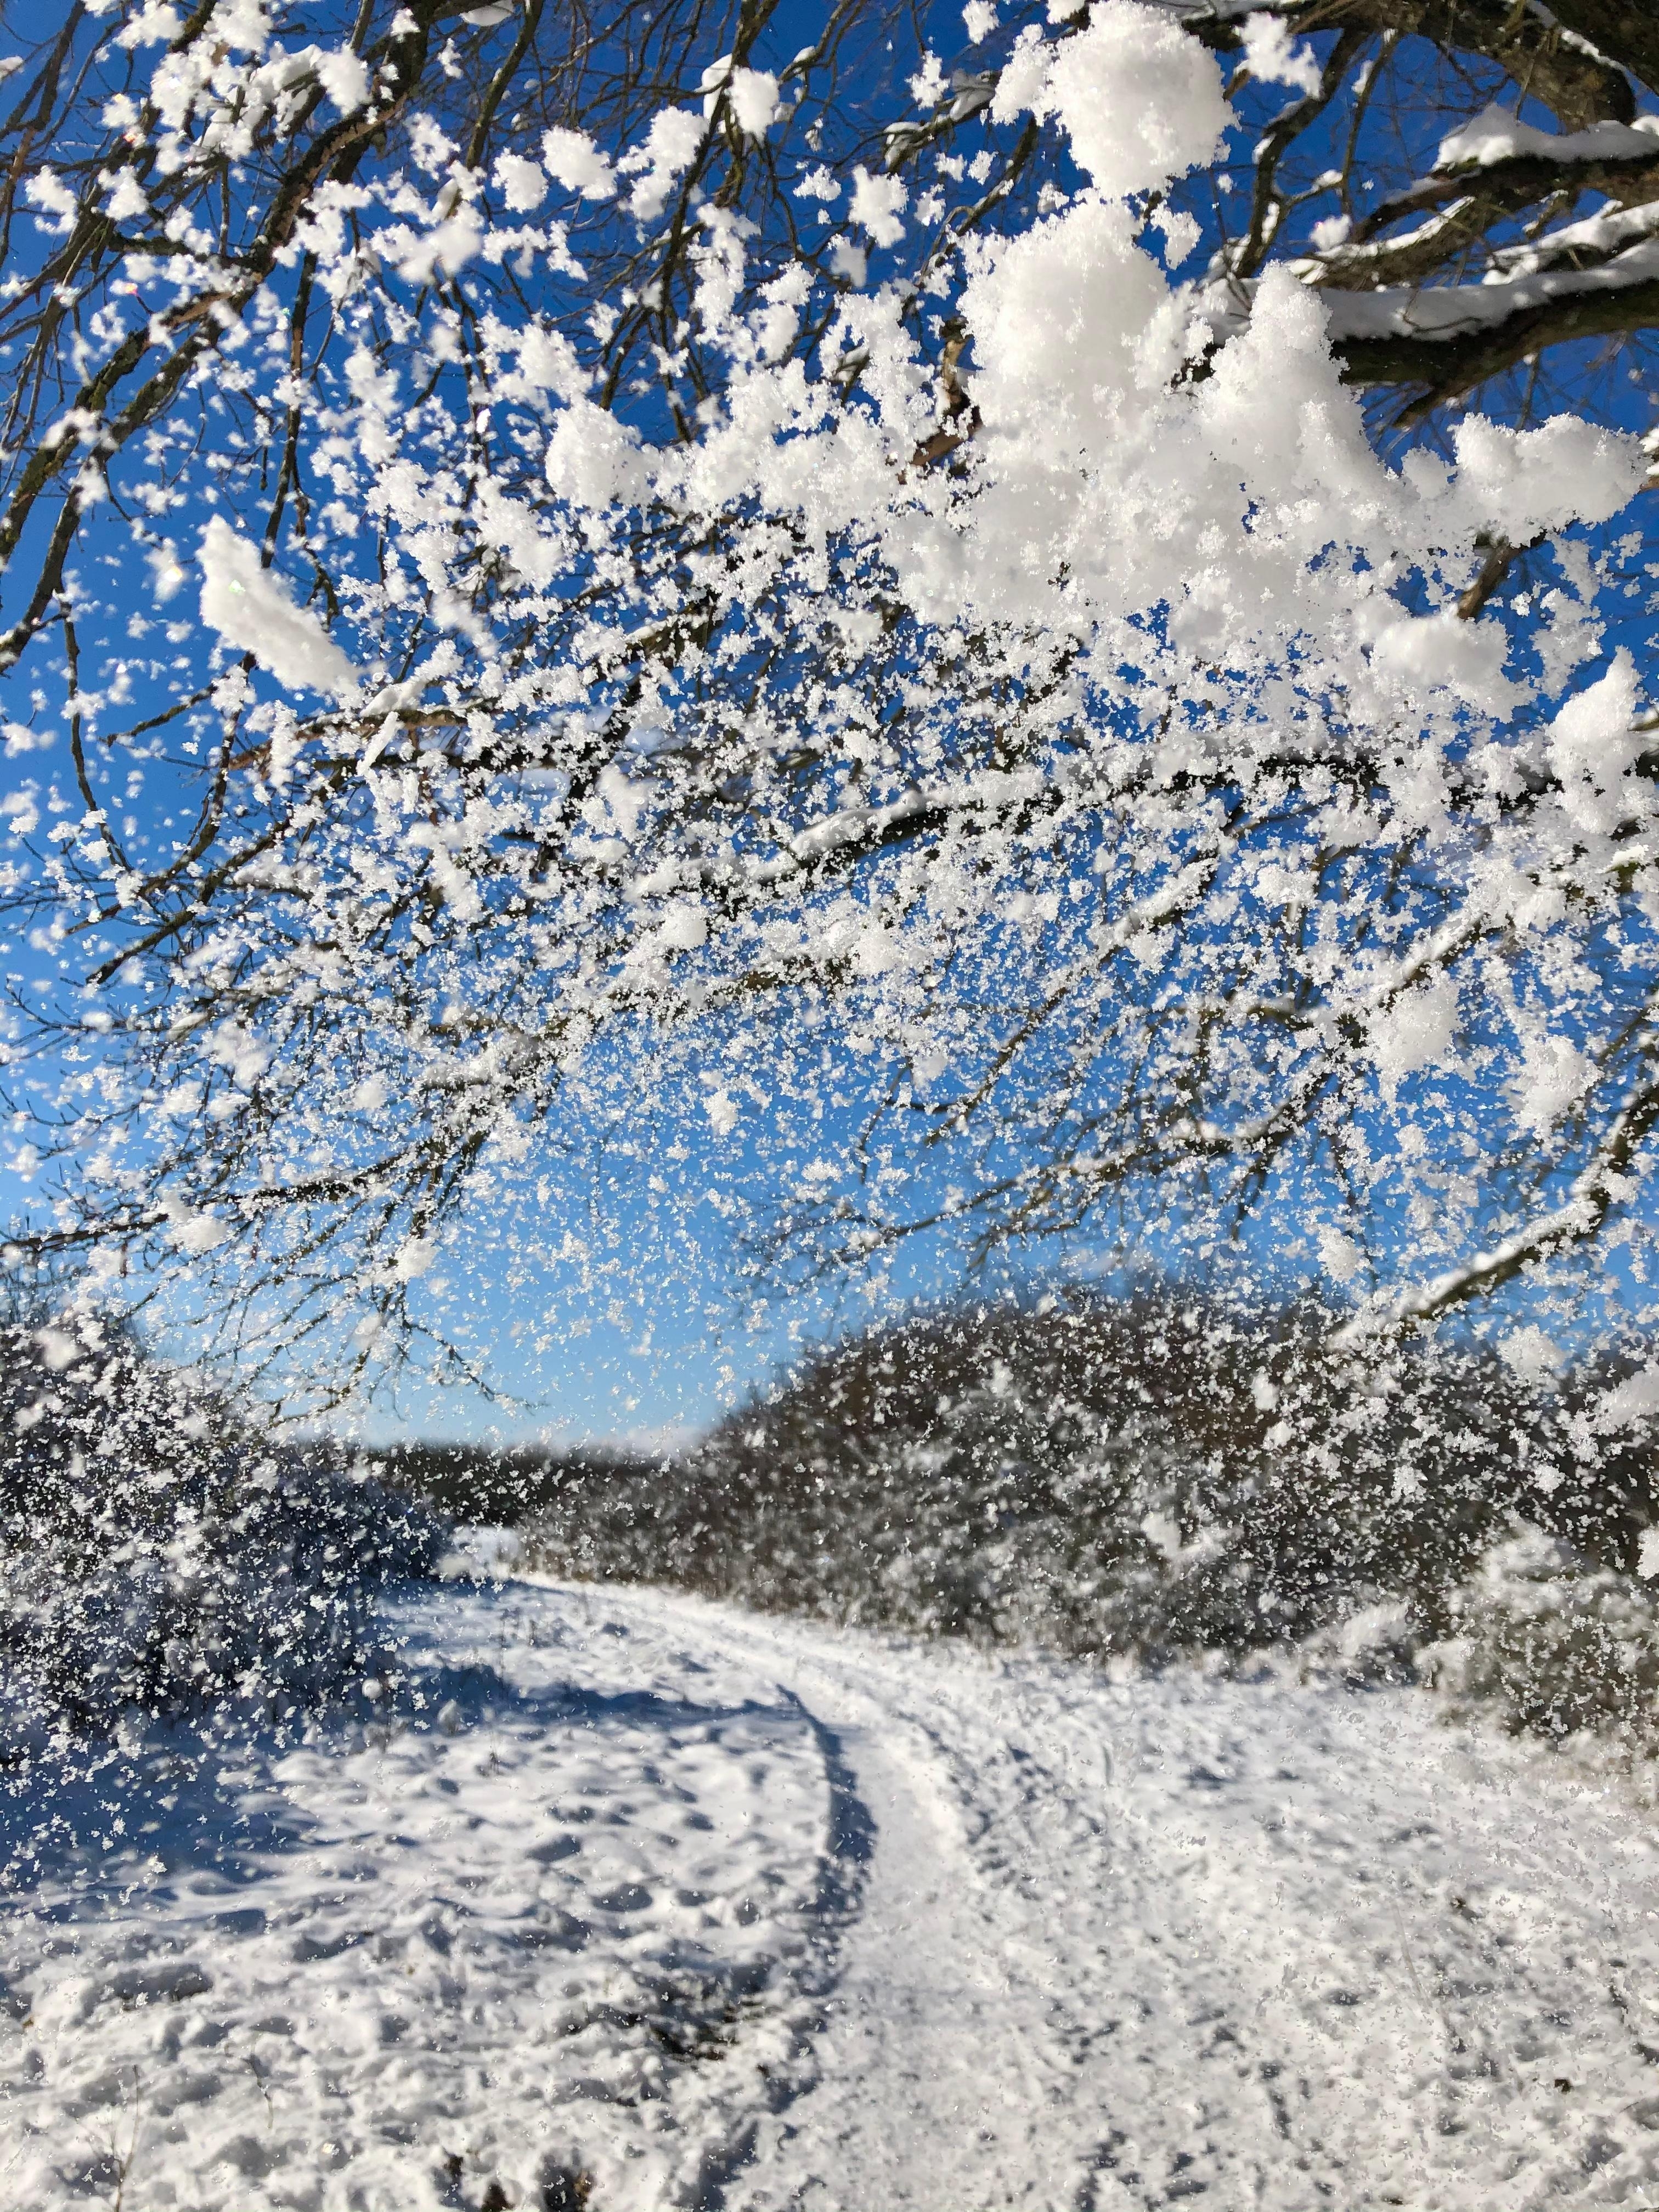 Mit diesem Bild von letzter Woche nehme ich Abschied vom #Winter #schnee #winterwonderland